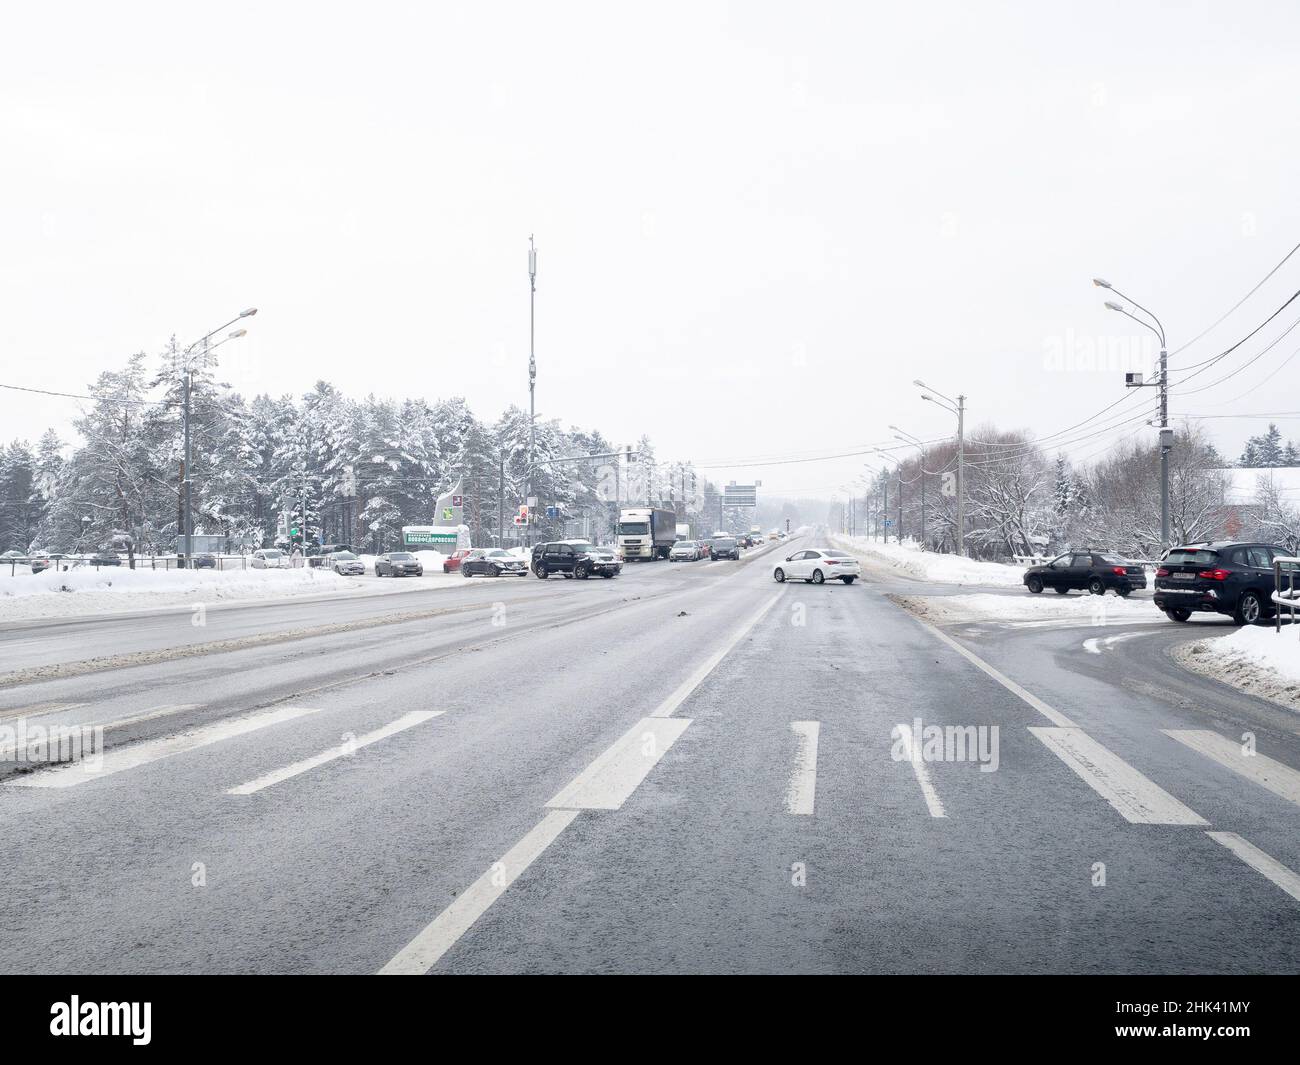 Regione di Mosca. Russia. Gennaio 29, 2022. Le auto attraversano un incrocio su un'autostrada suburbana. Il movimento di automobili su un'autostrada suburbana in un giorno d'inverno durante una nevicata. Foto Stock